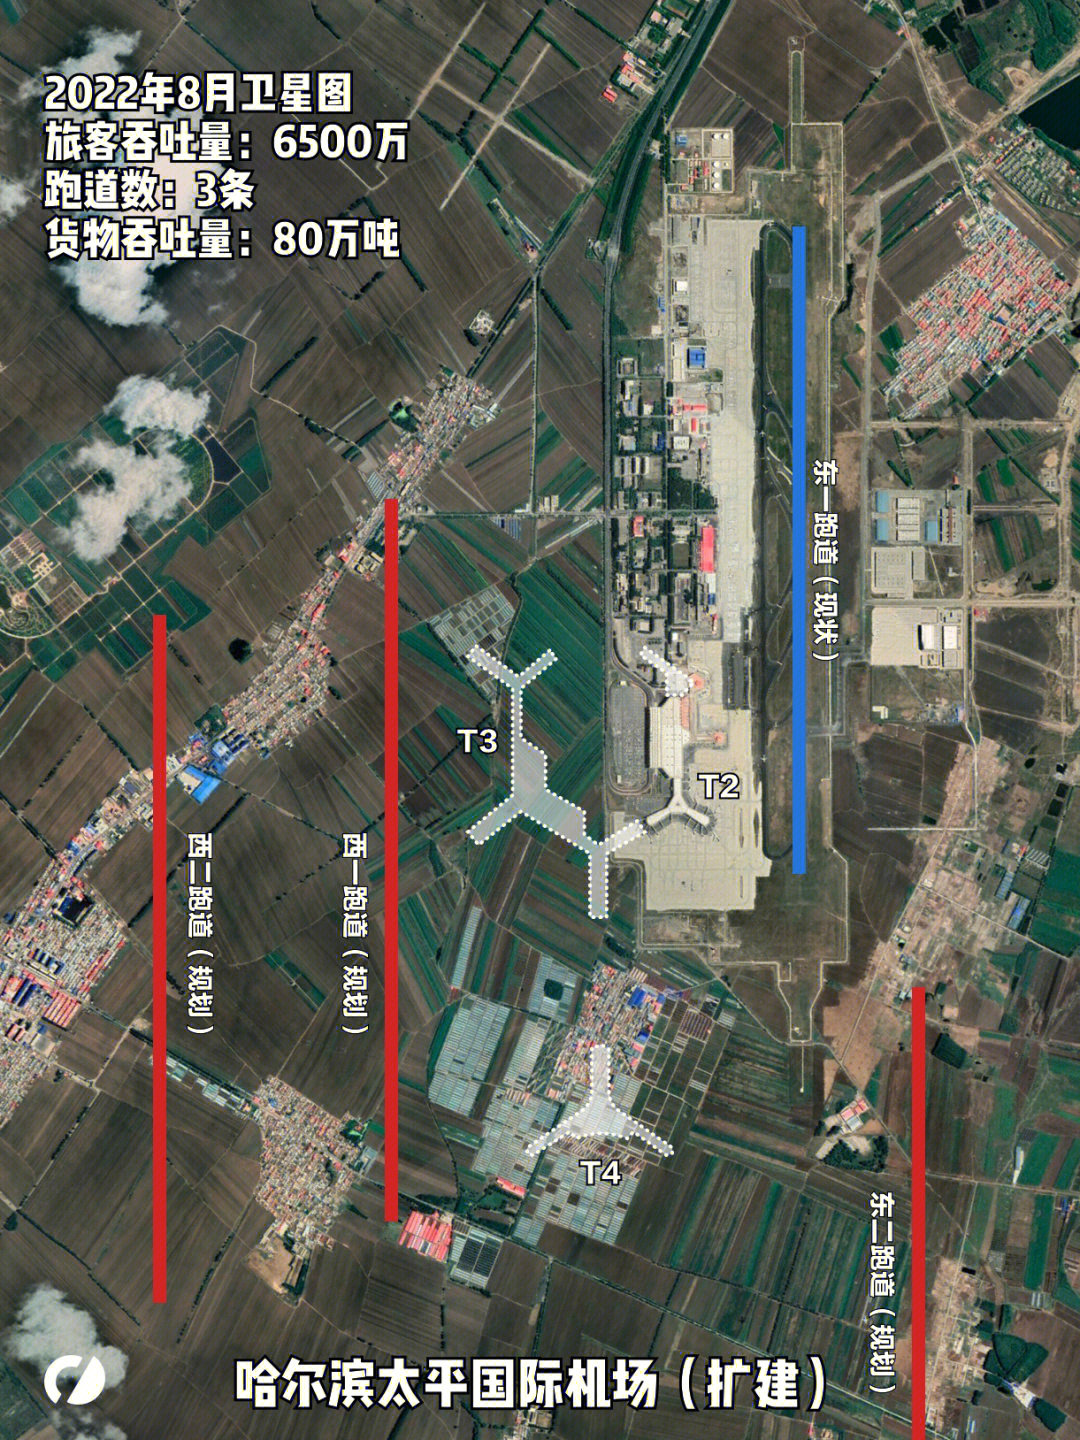 在建超级机场系列:哈尔滨太平国际机场规划